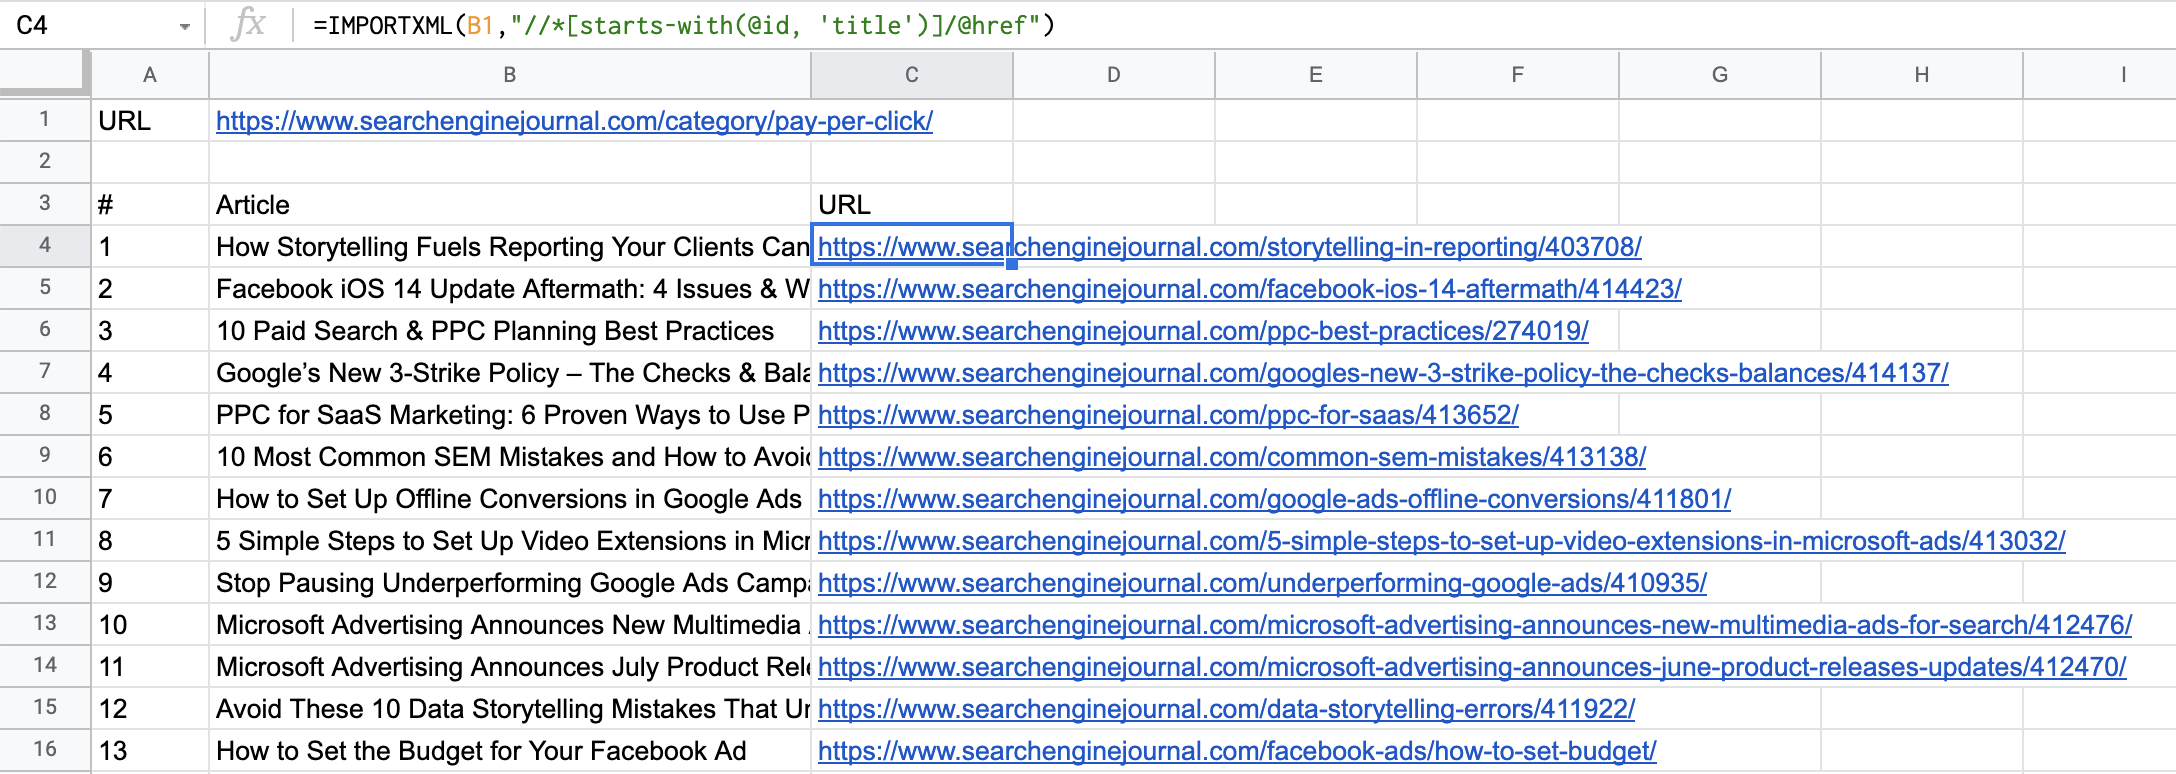 المقالات وعناوين URL التي تم استيرادها إلى جداول بيانات Google.